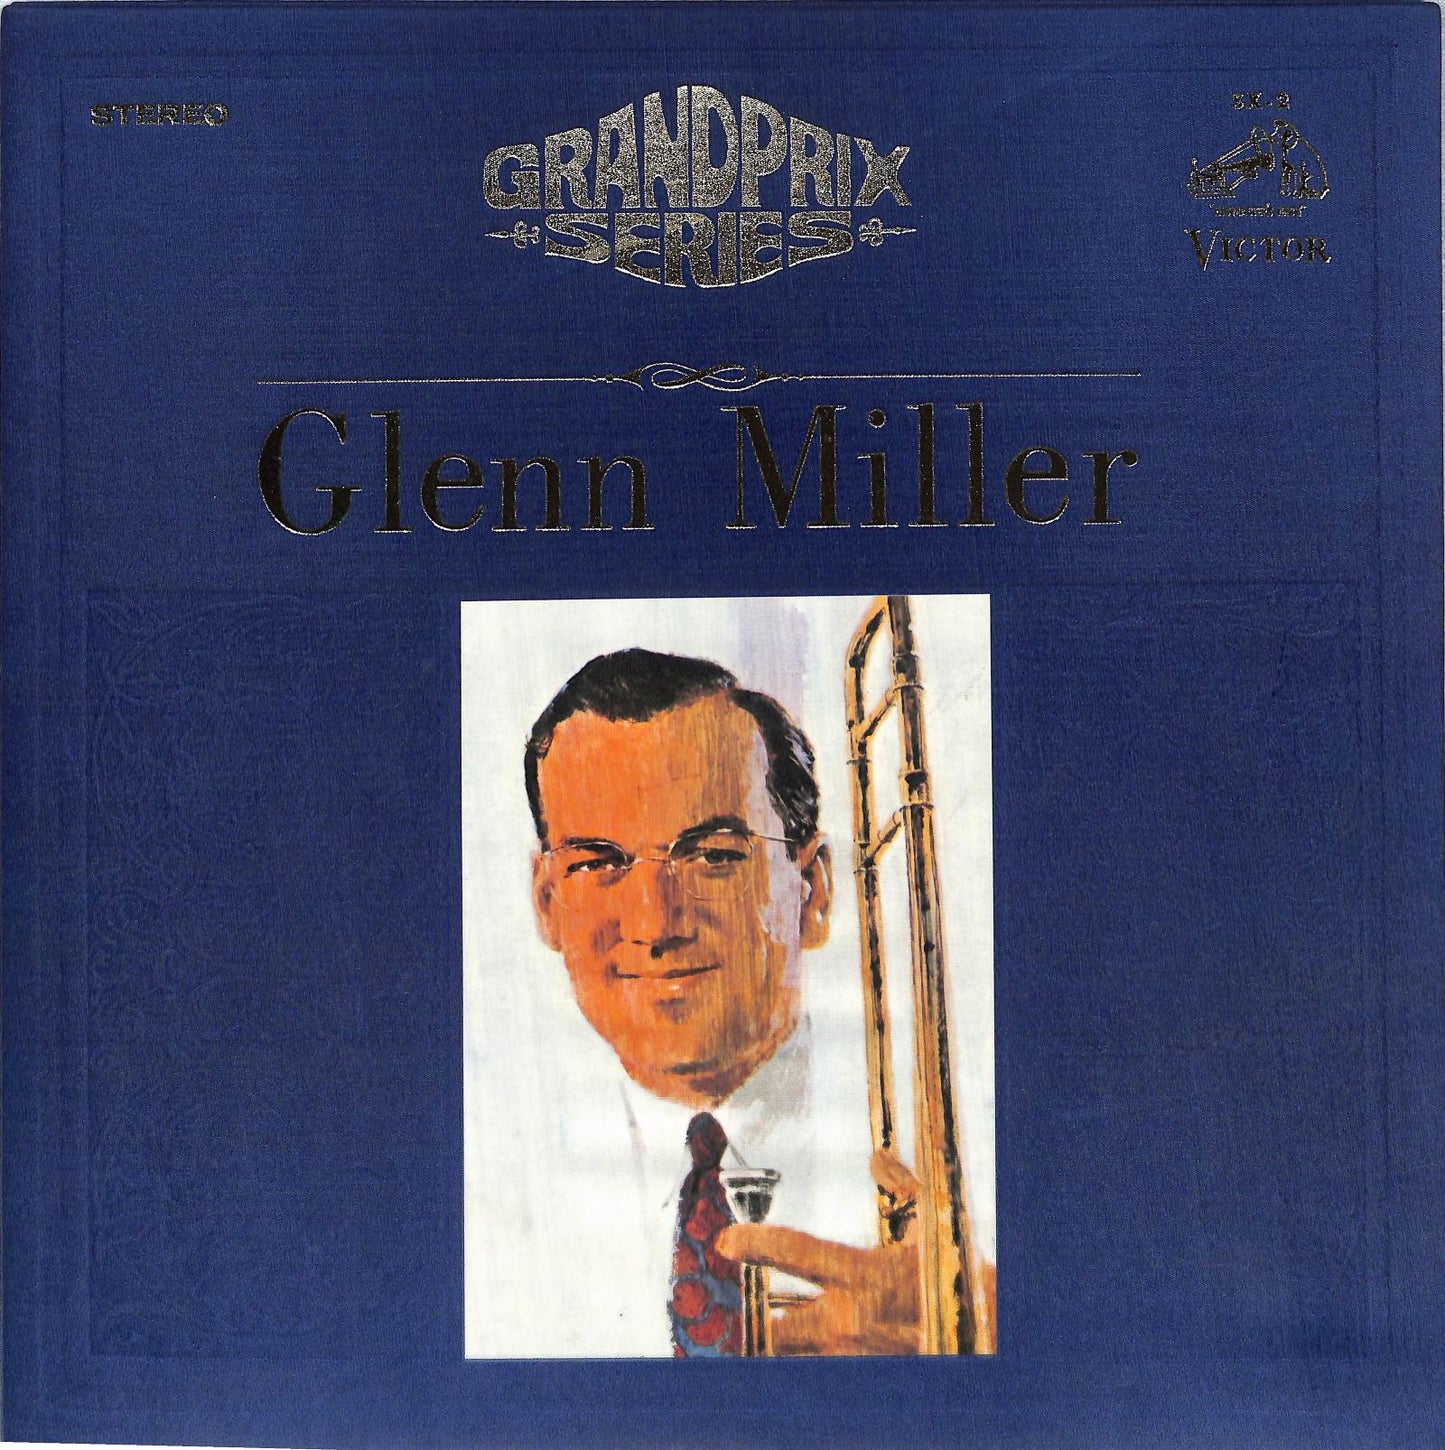 THE NEW GLENN MILLER ORCHESTRA - Glenn Miller